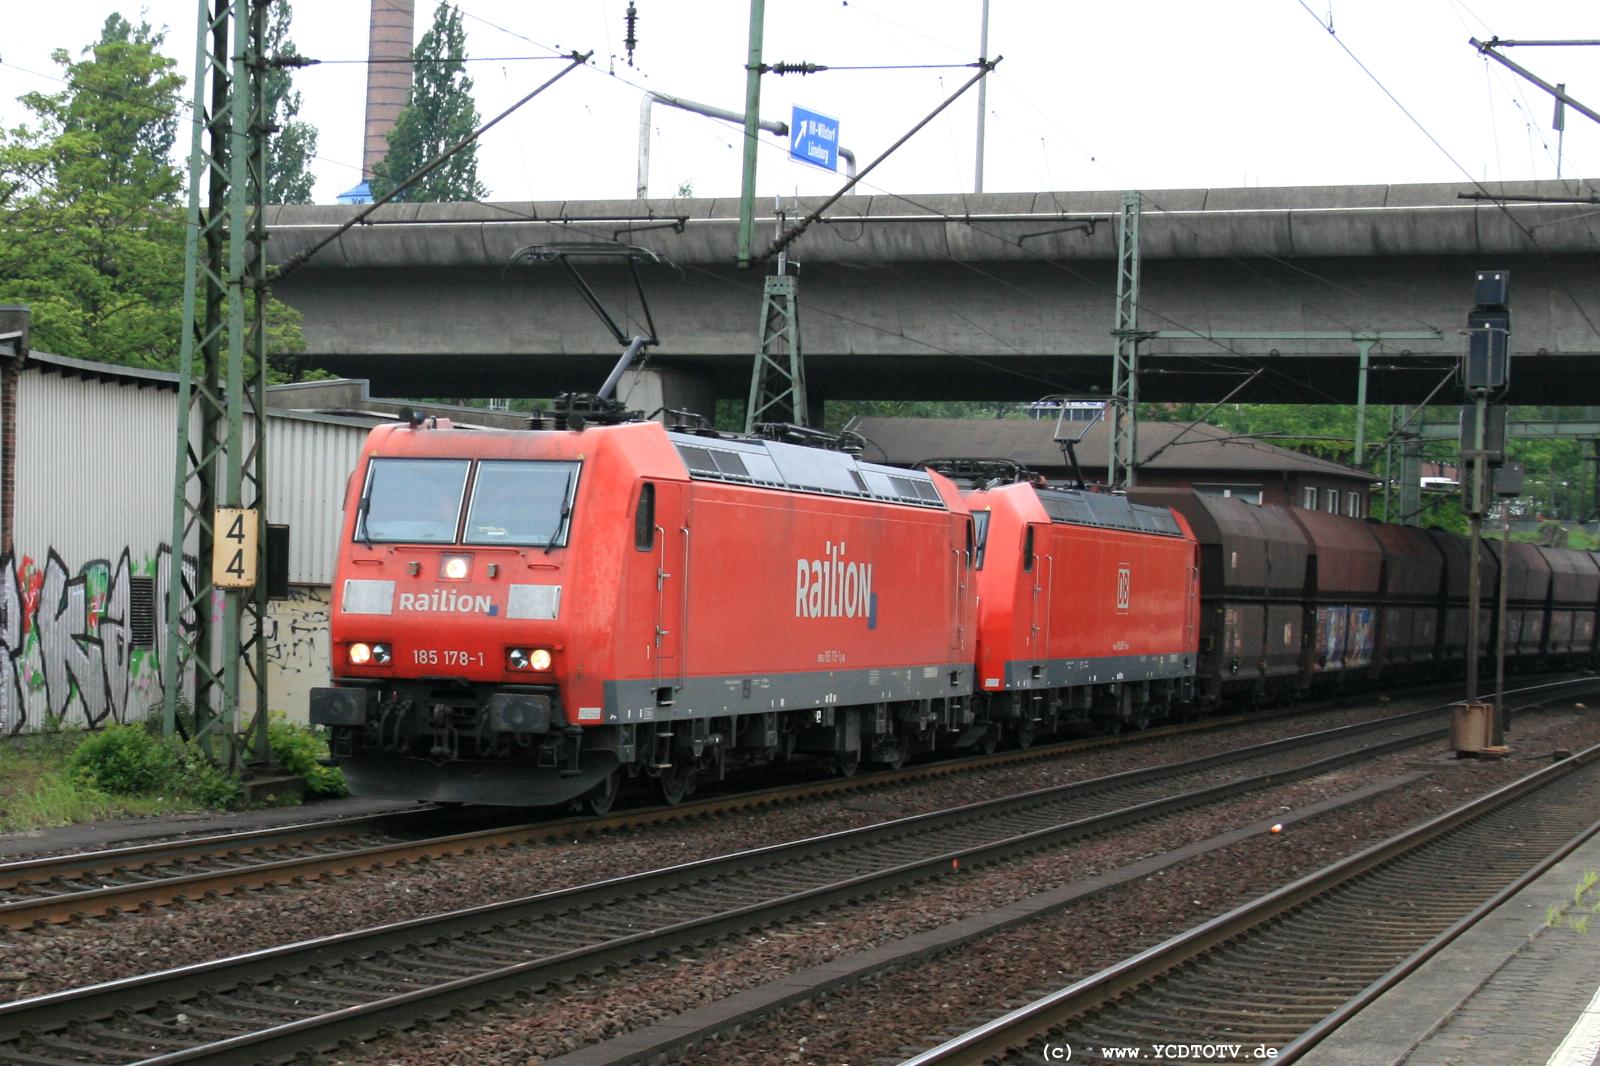  Bahnhof Hamburg-Harburg, 18.05.2011, 14:45 185 178-1 und 185 065-0 Richtung Sden 